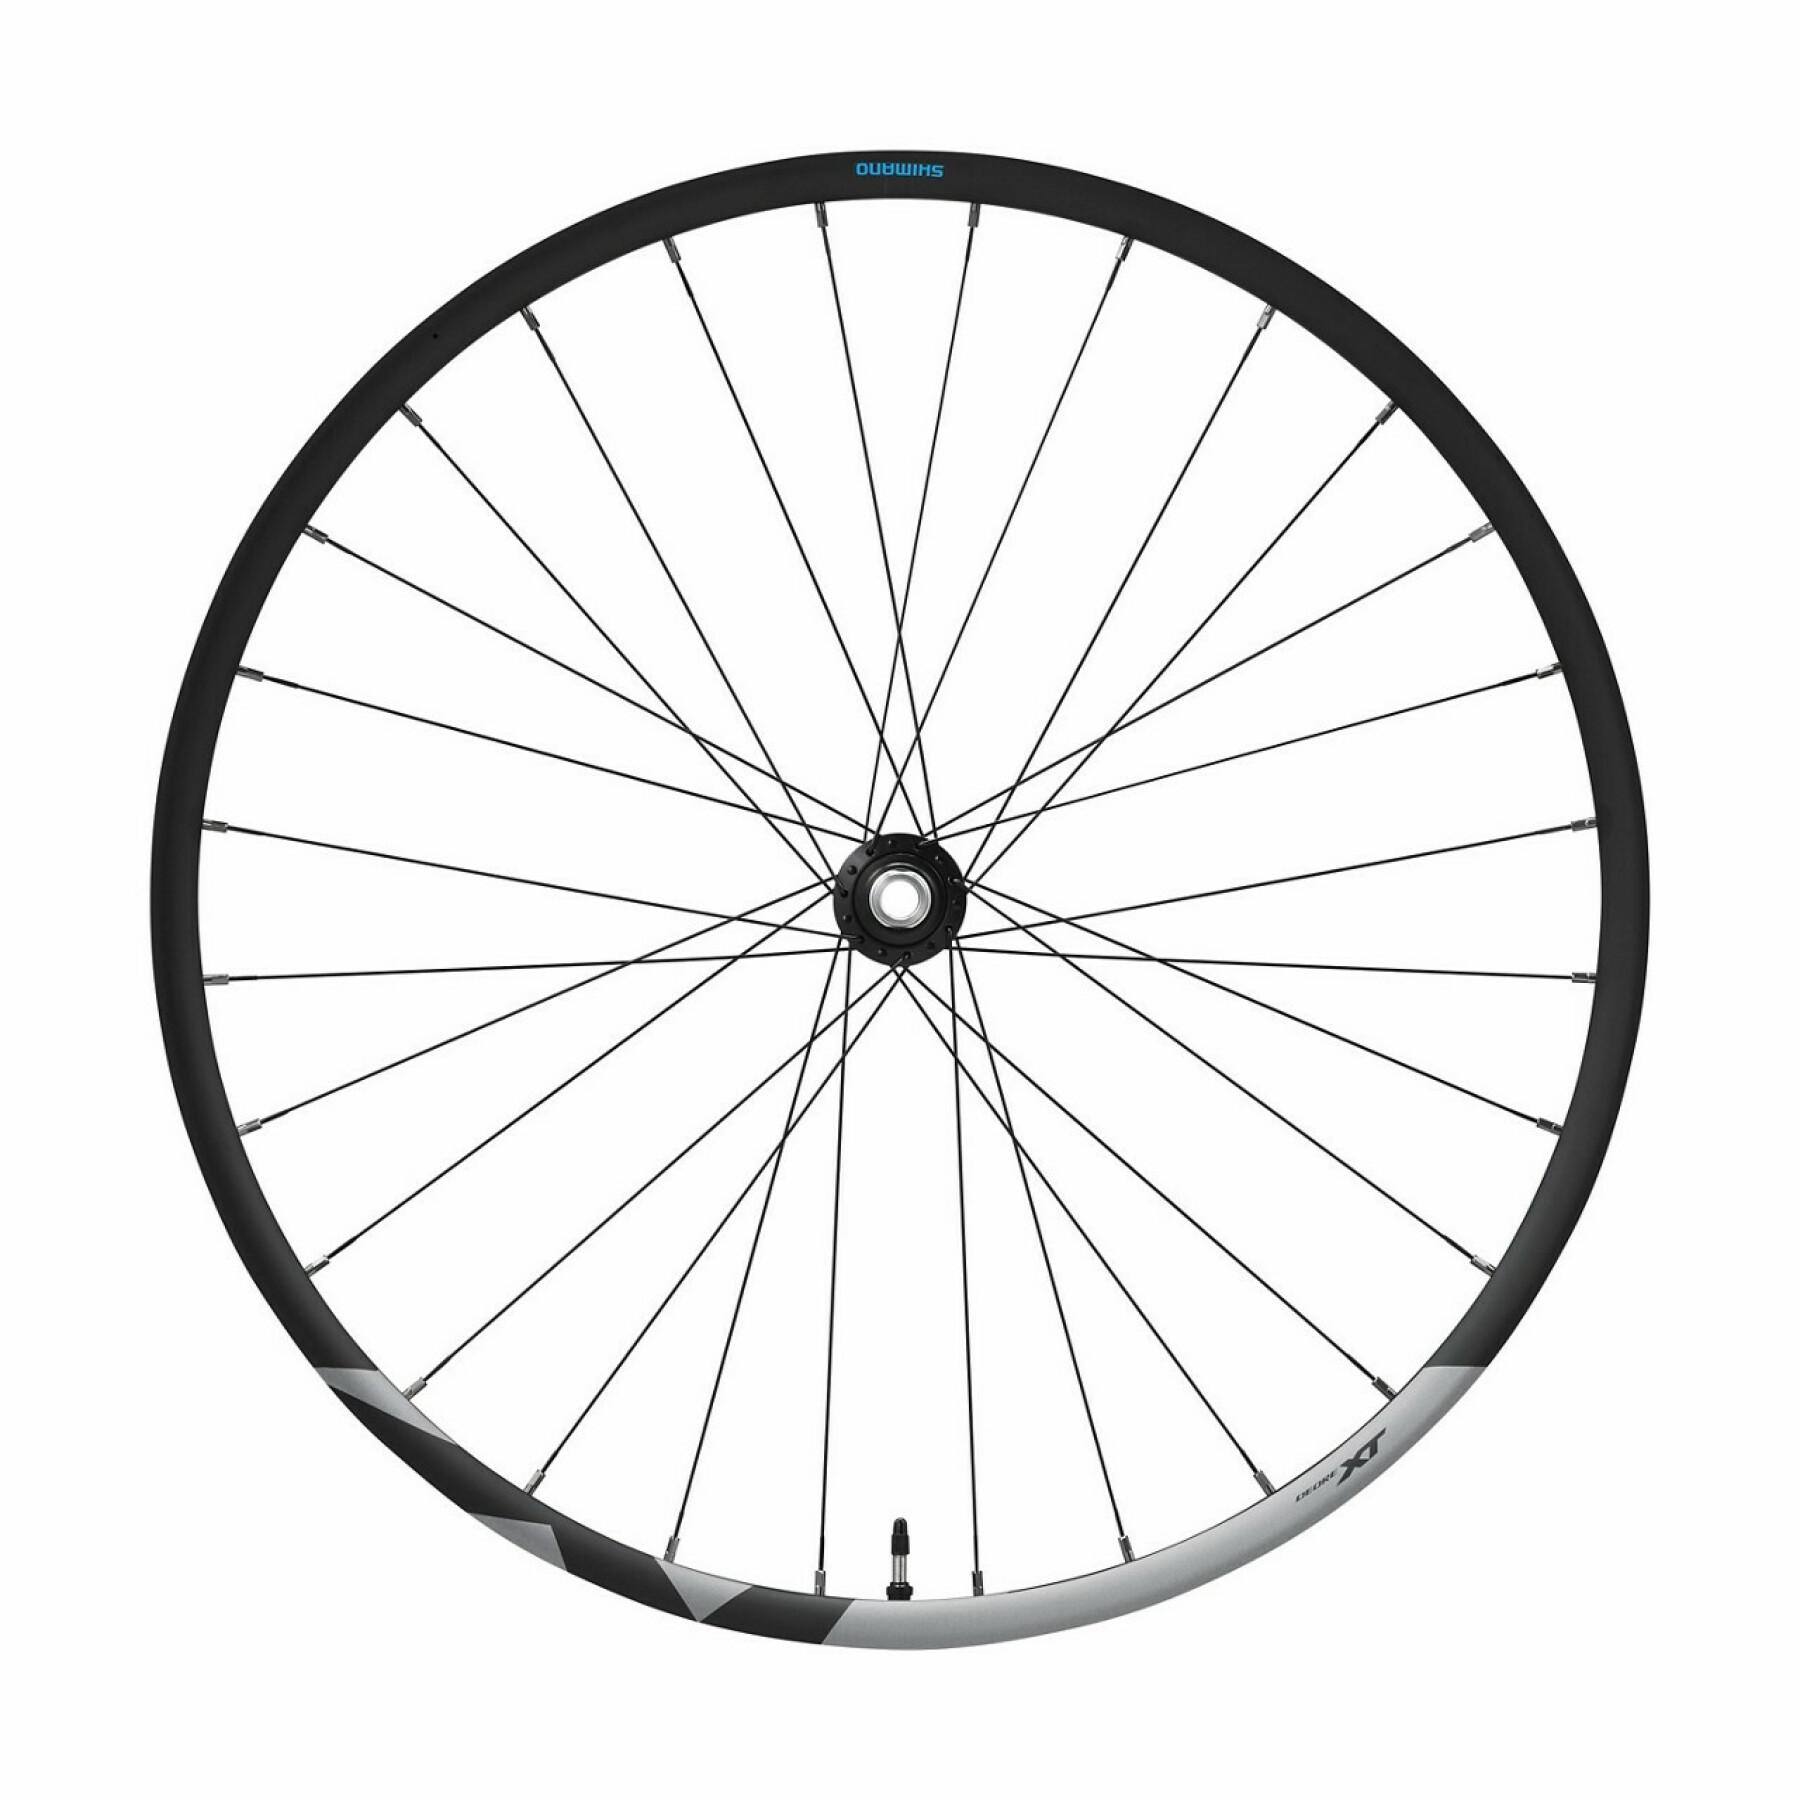 Bicycle wheel disc brake central locking Shimano Deore XT WH-M8120